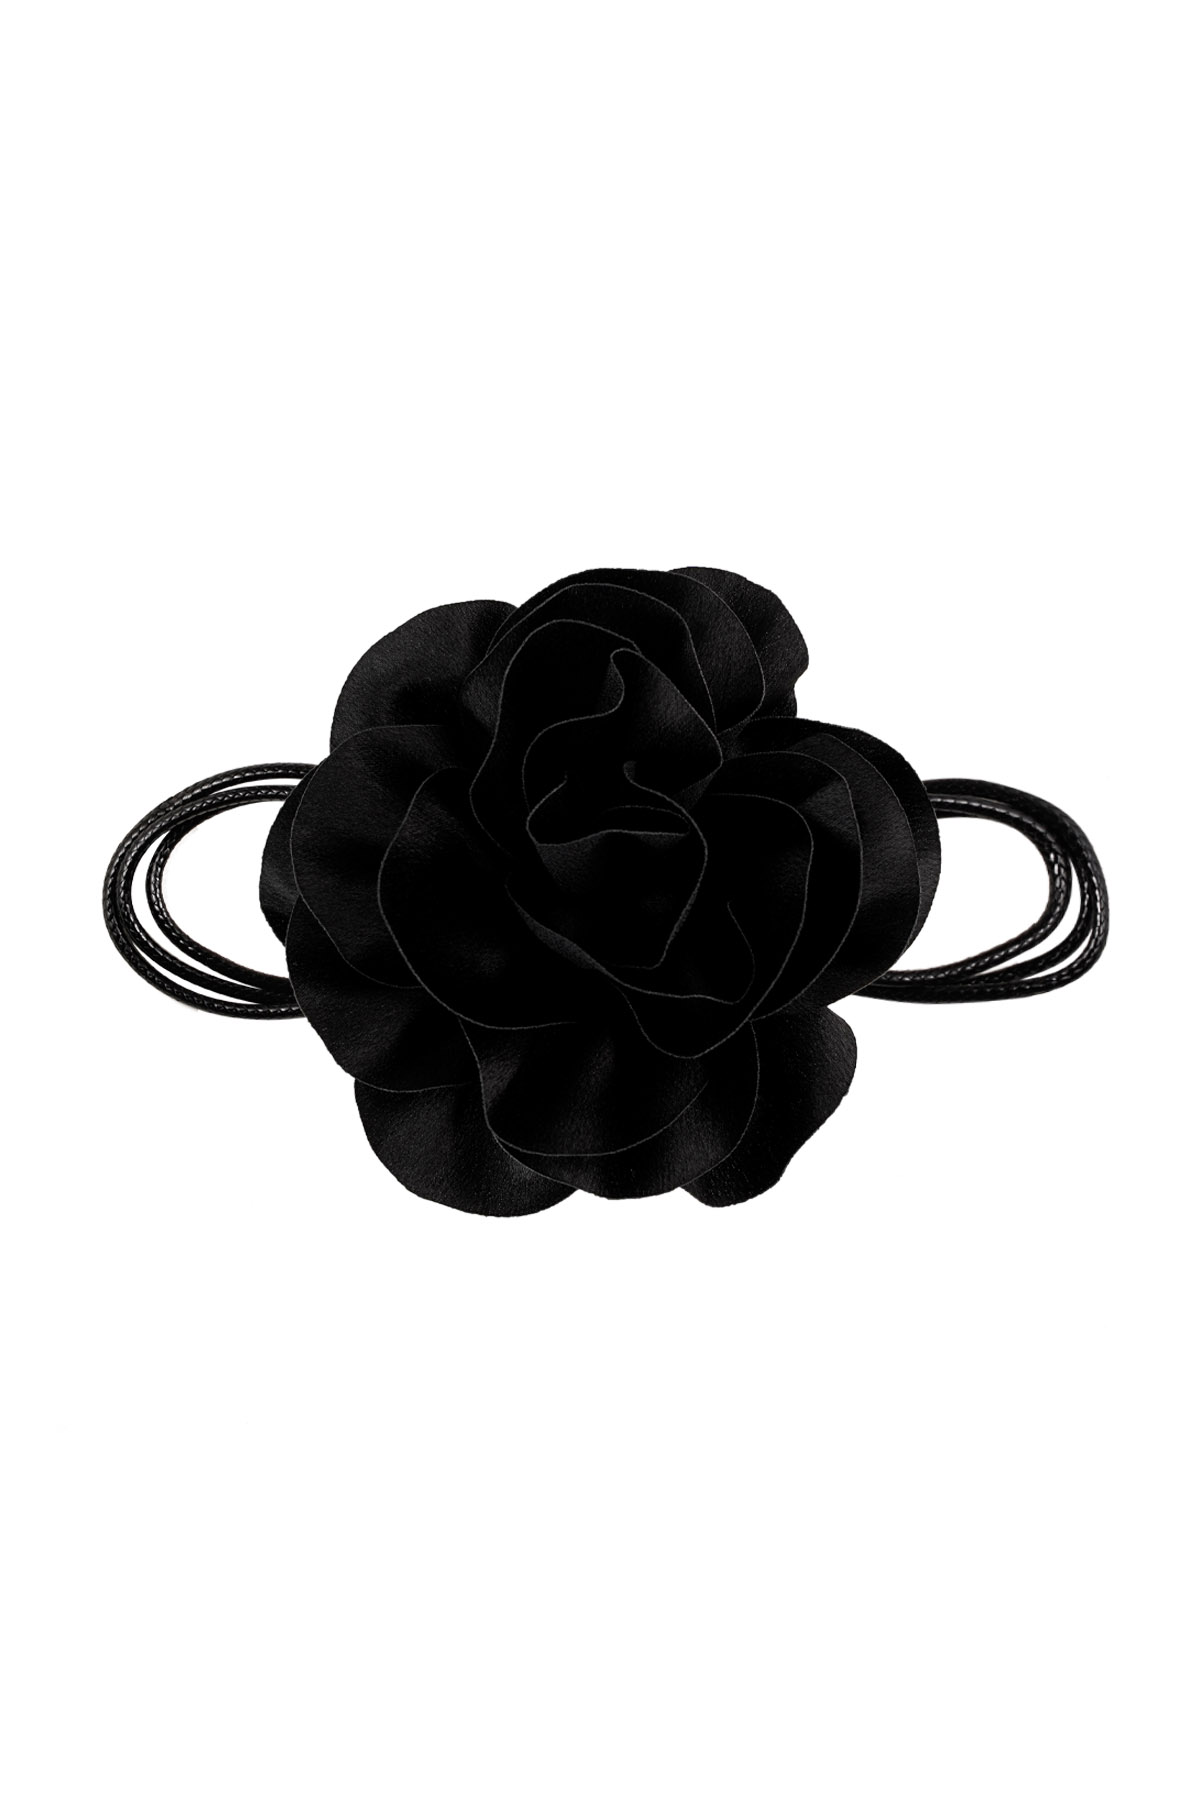 Collier corde fleur brillant - noir h5 